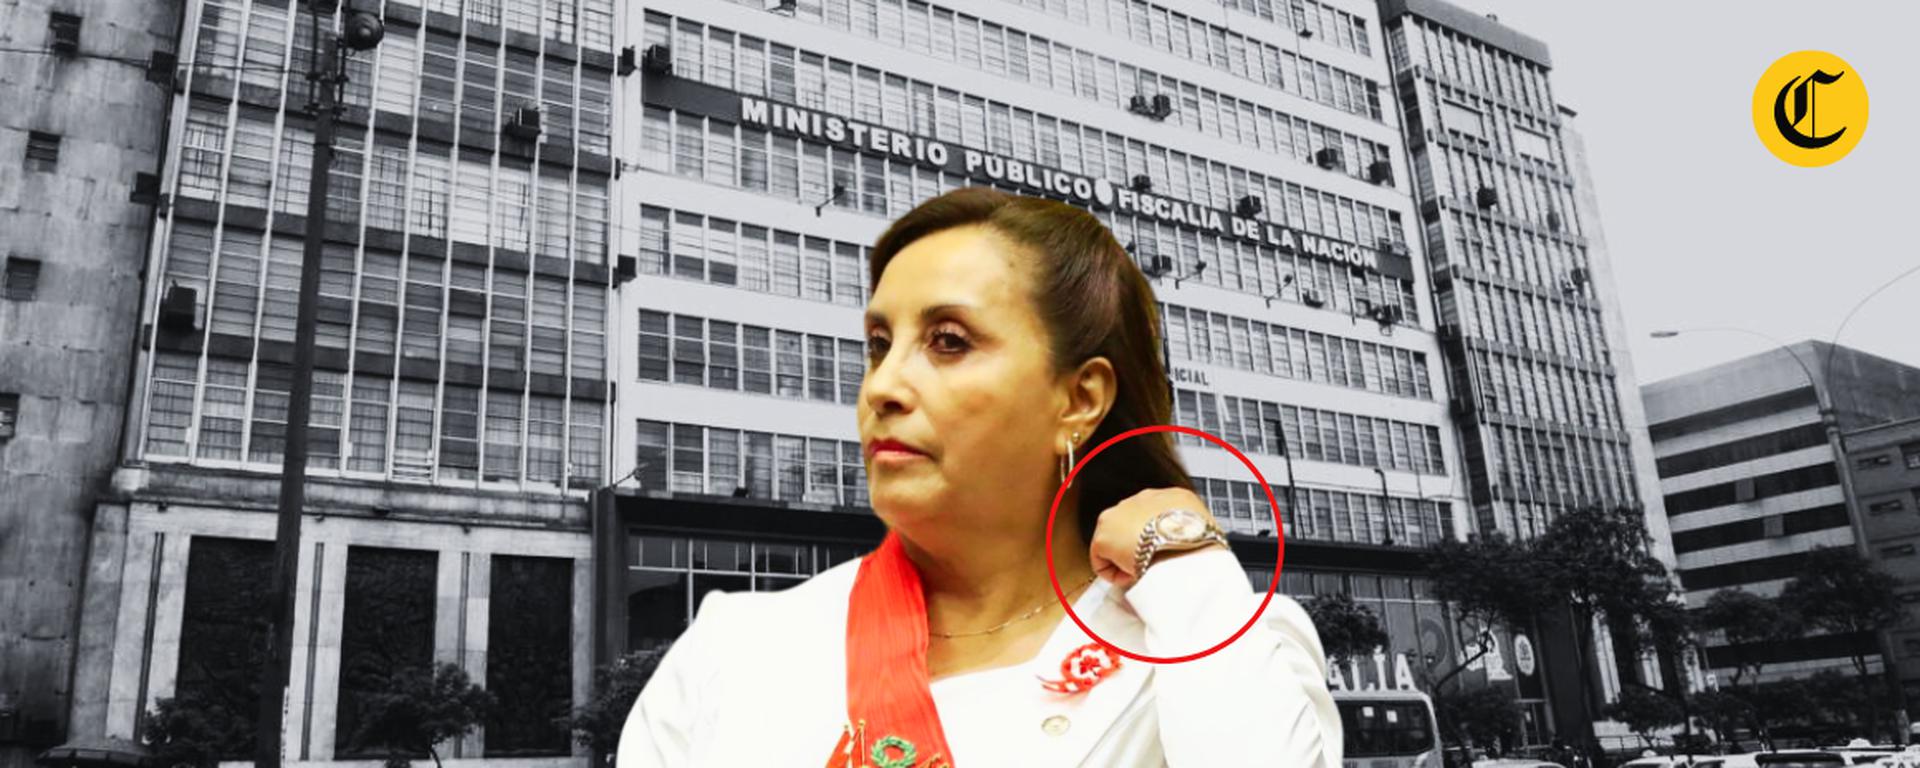 Dina Boluarte: Las posibles consecuencias de su negativa a abrir su secreto bancario de forma voluntaria